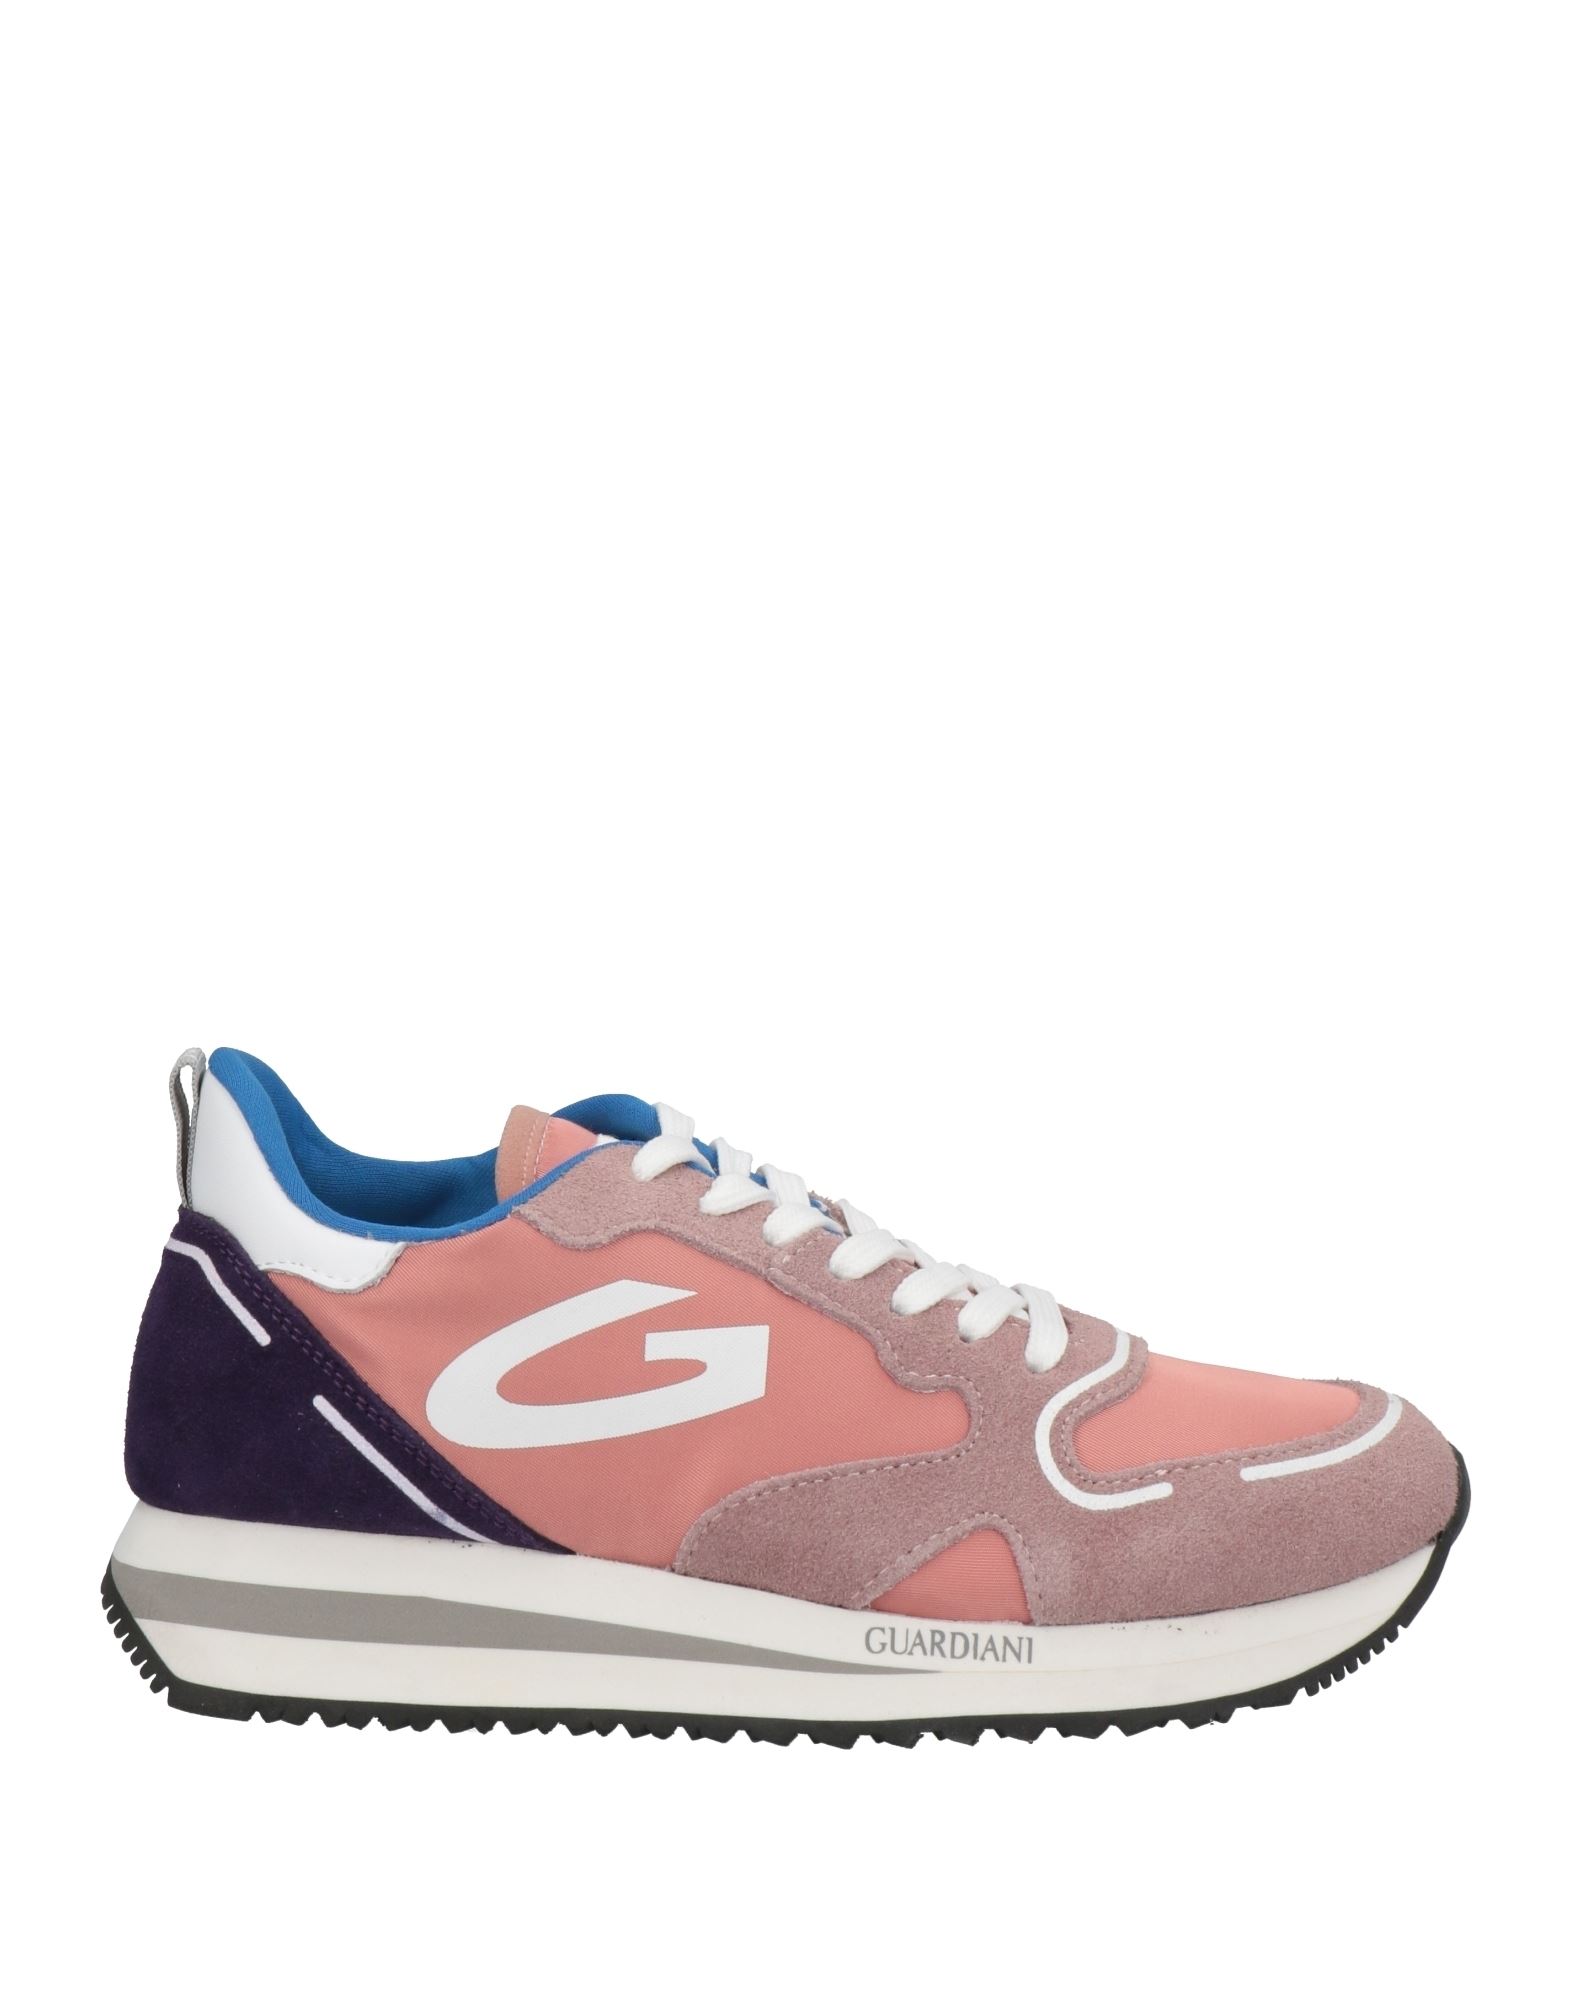 Alberto Guardiani Sneakers In Salmon Pink